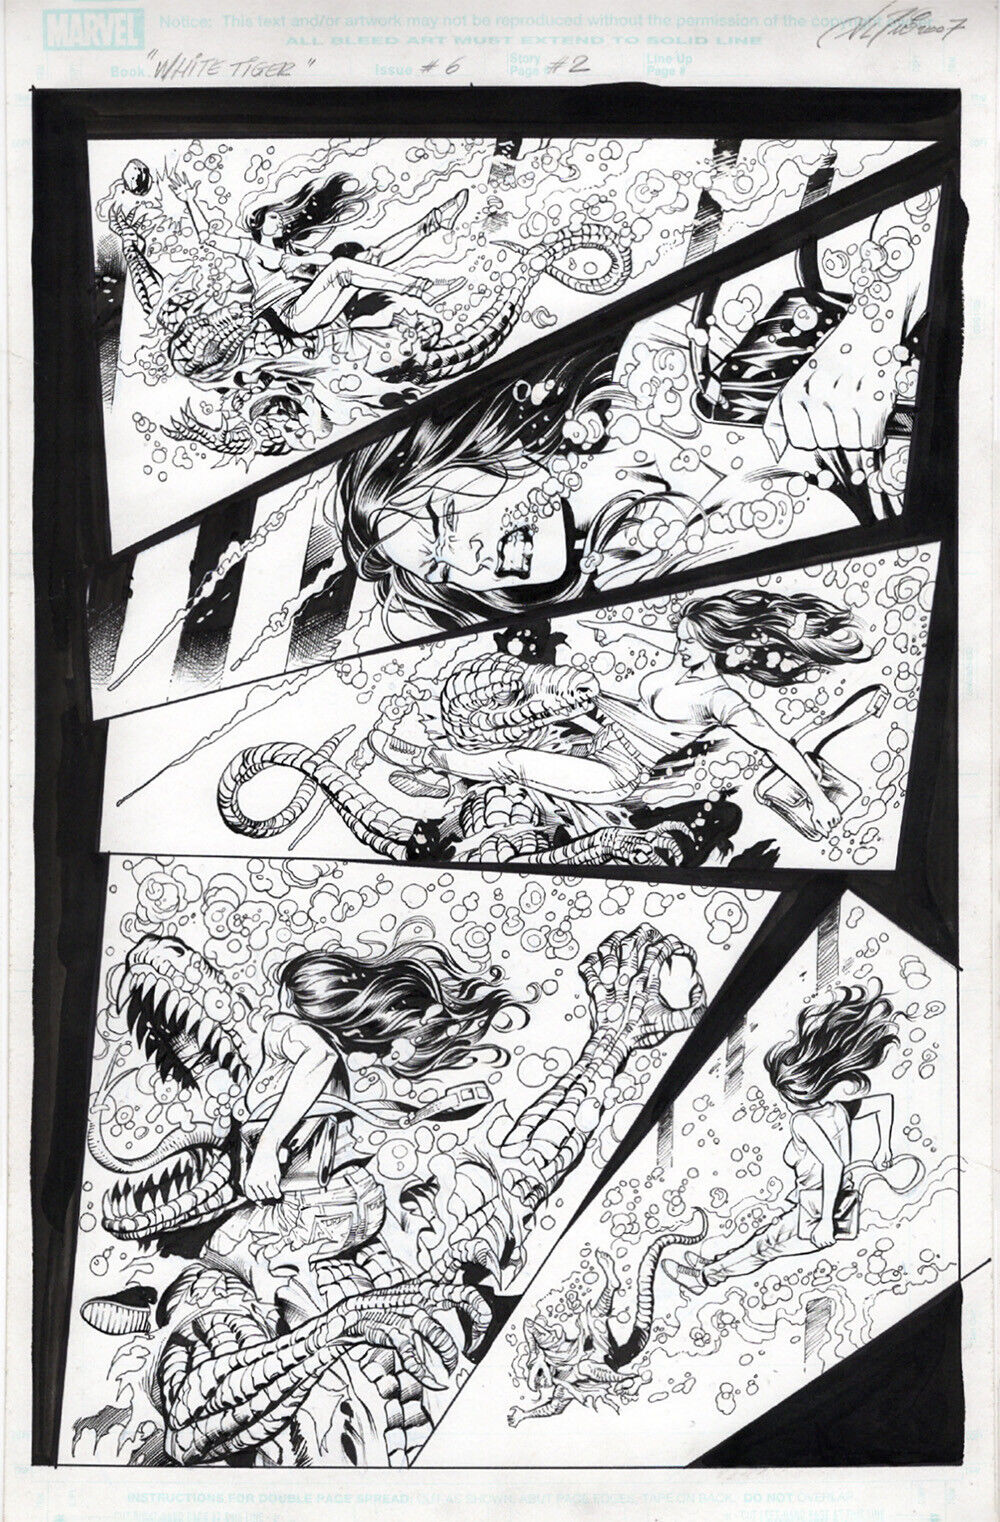 White Tiger 6 p2 by Al Rio, The Lizard vs White Tiger, Marvel Original Comic Art